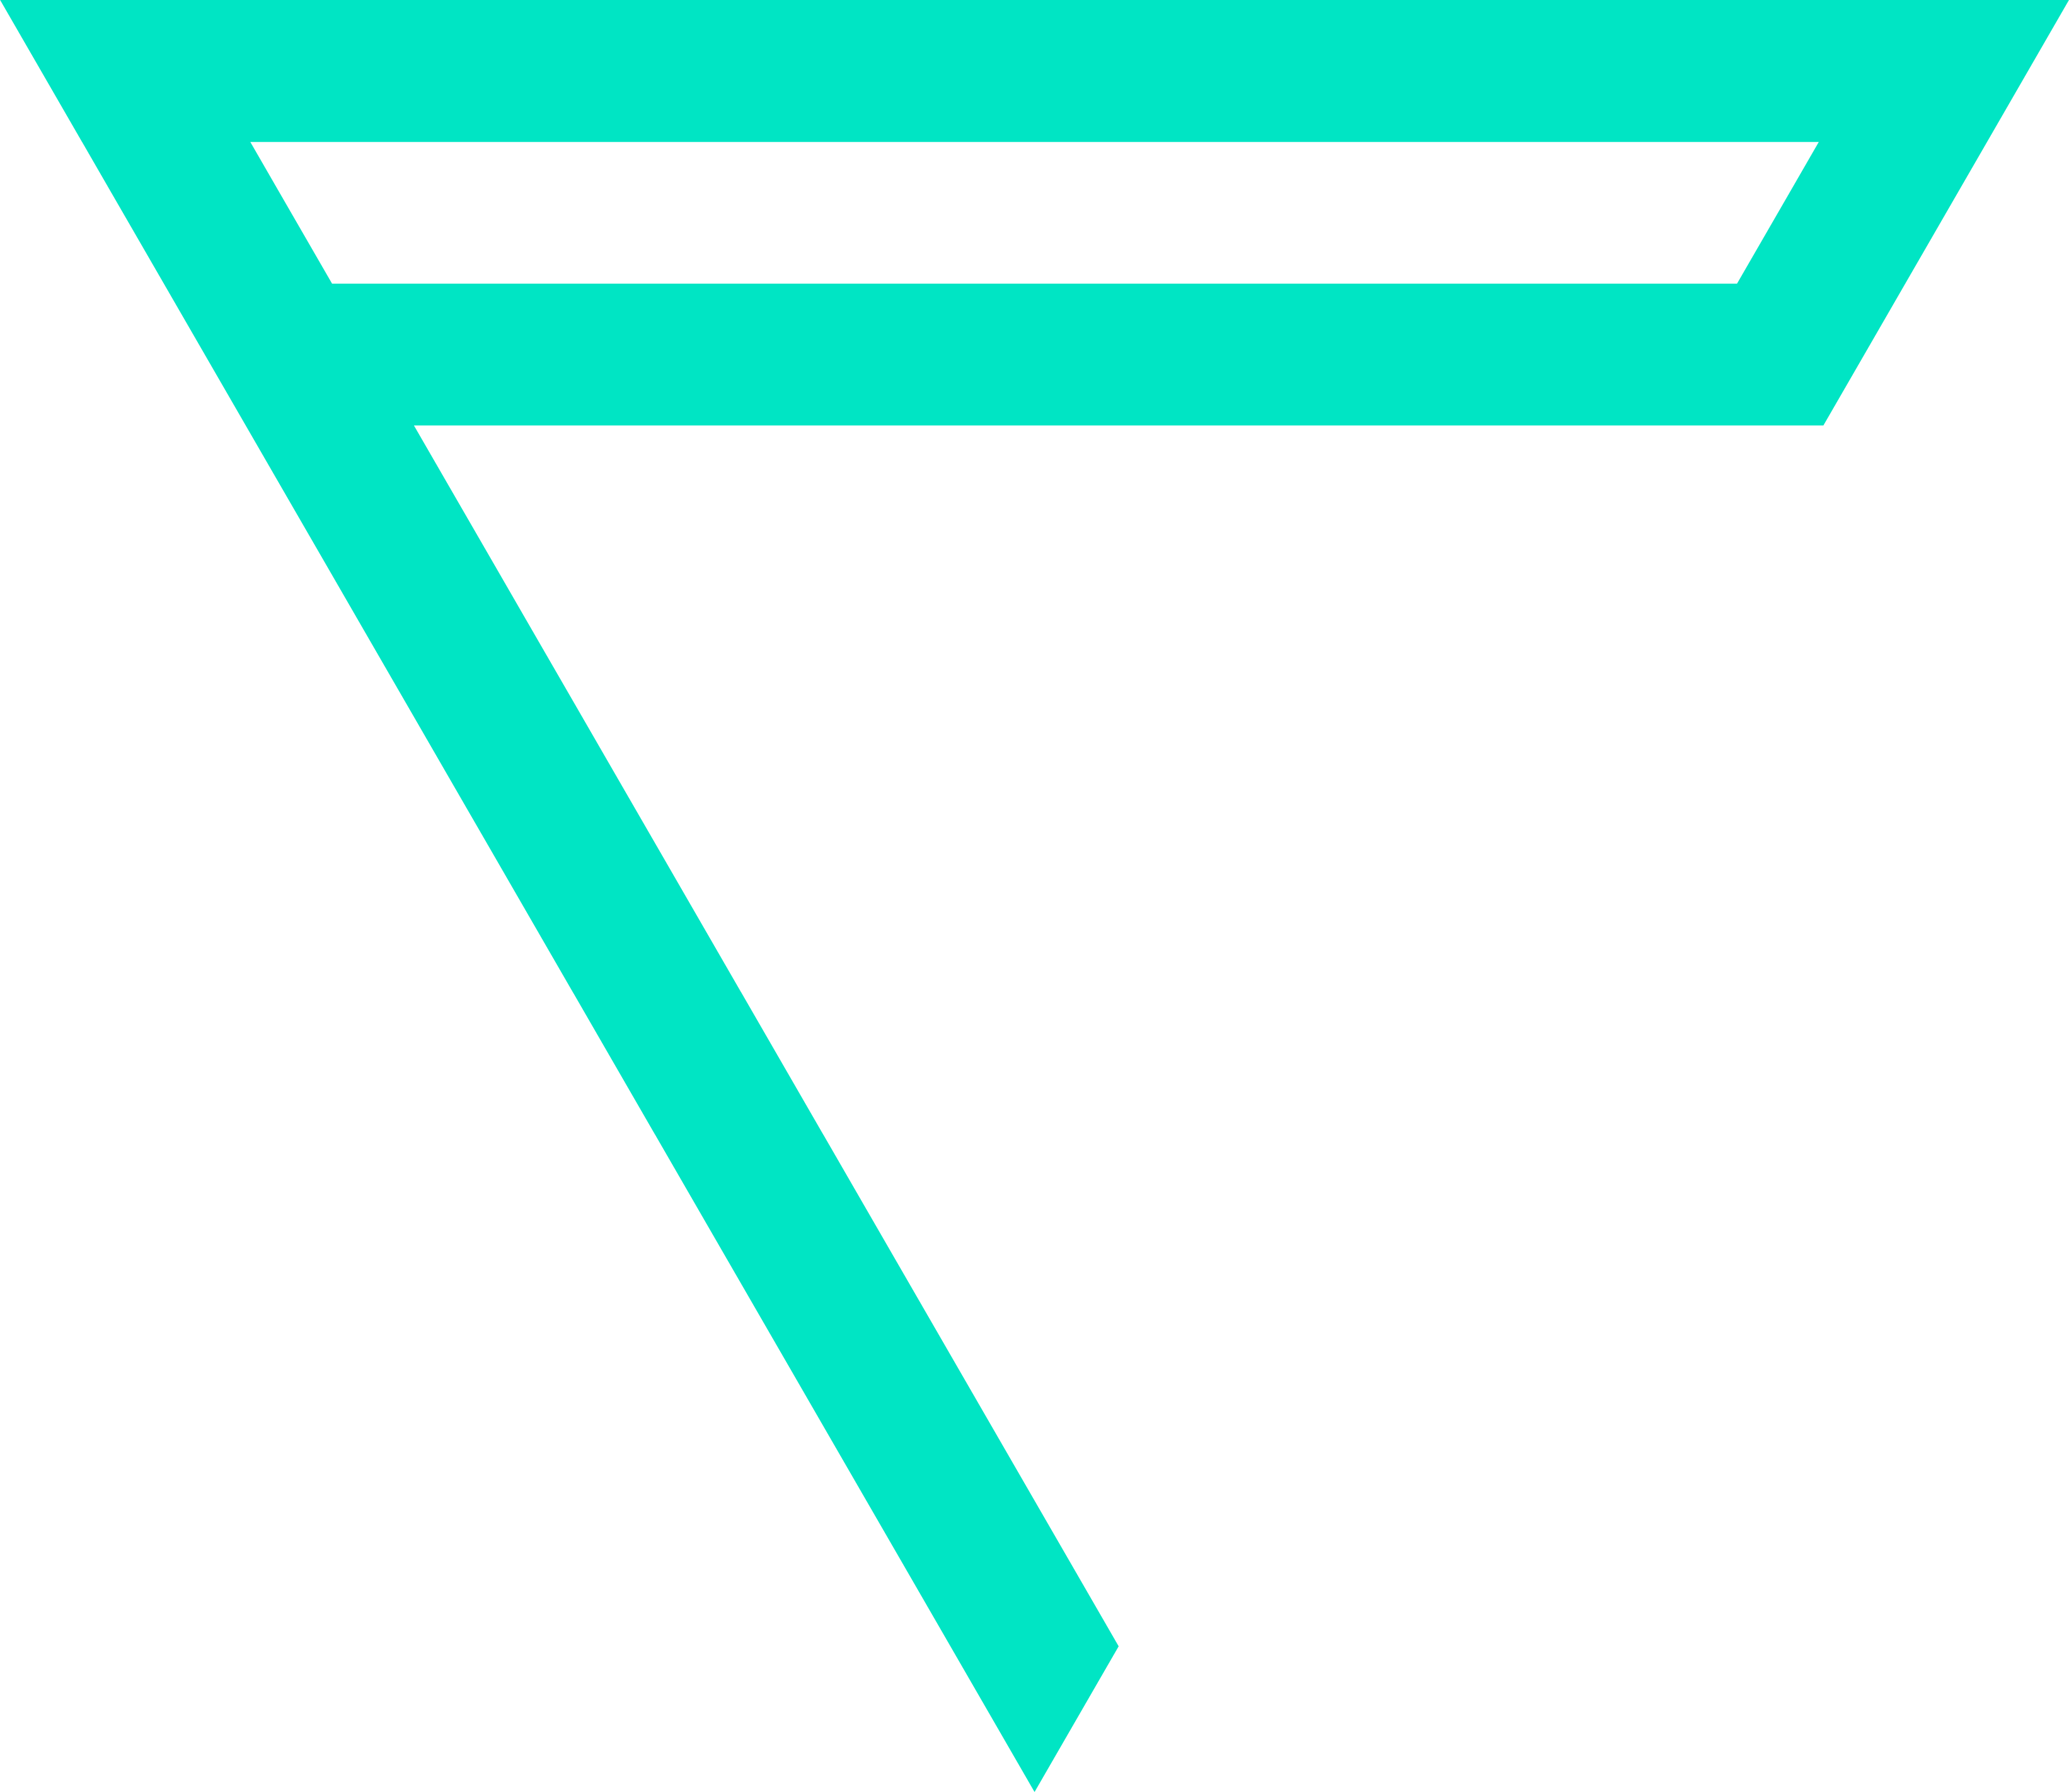 PhysioFunktion Kempen Logo